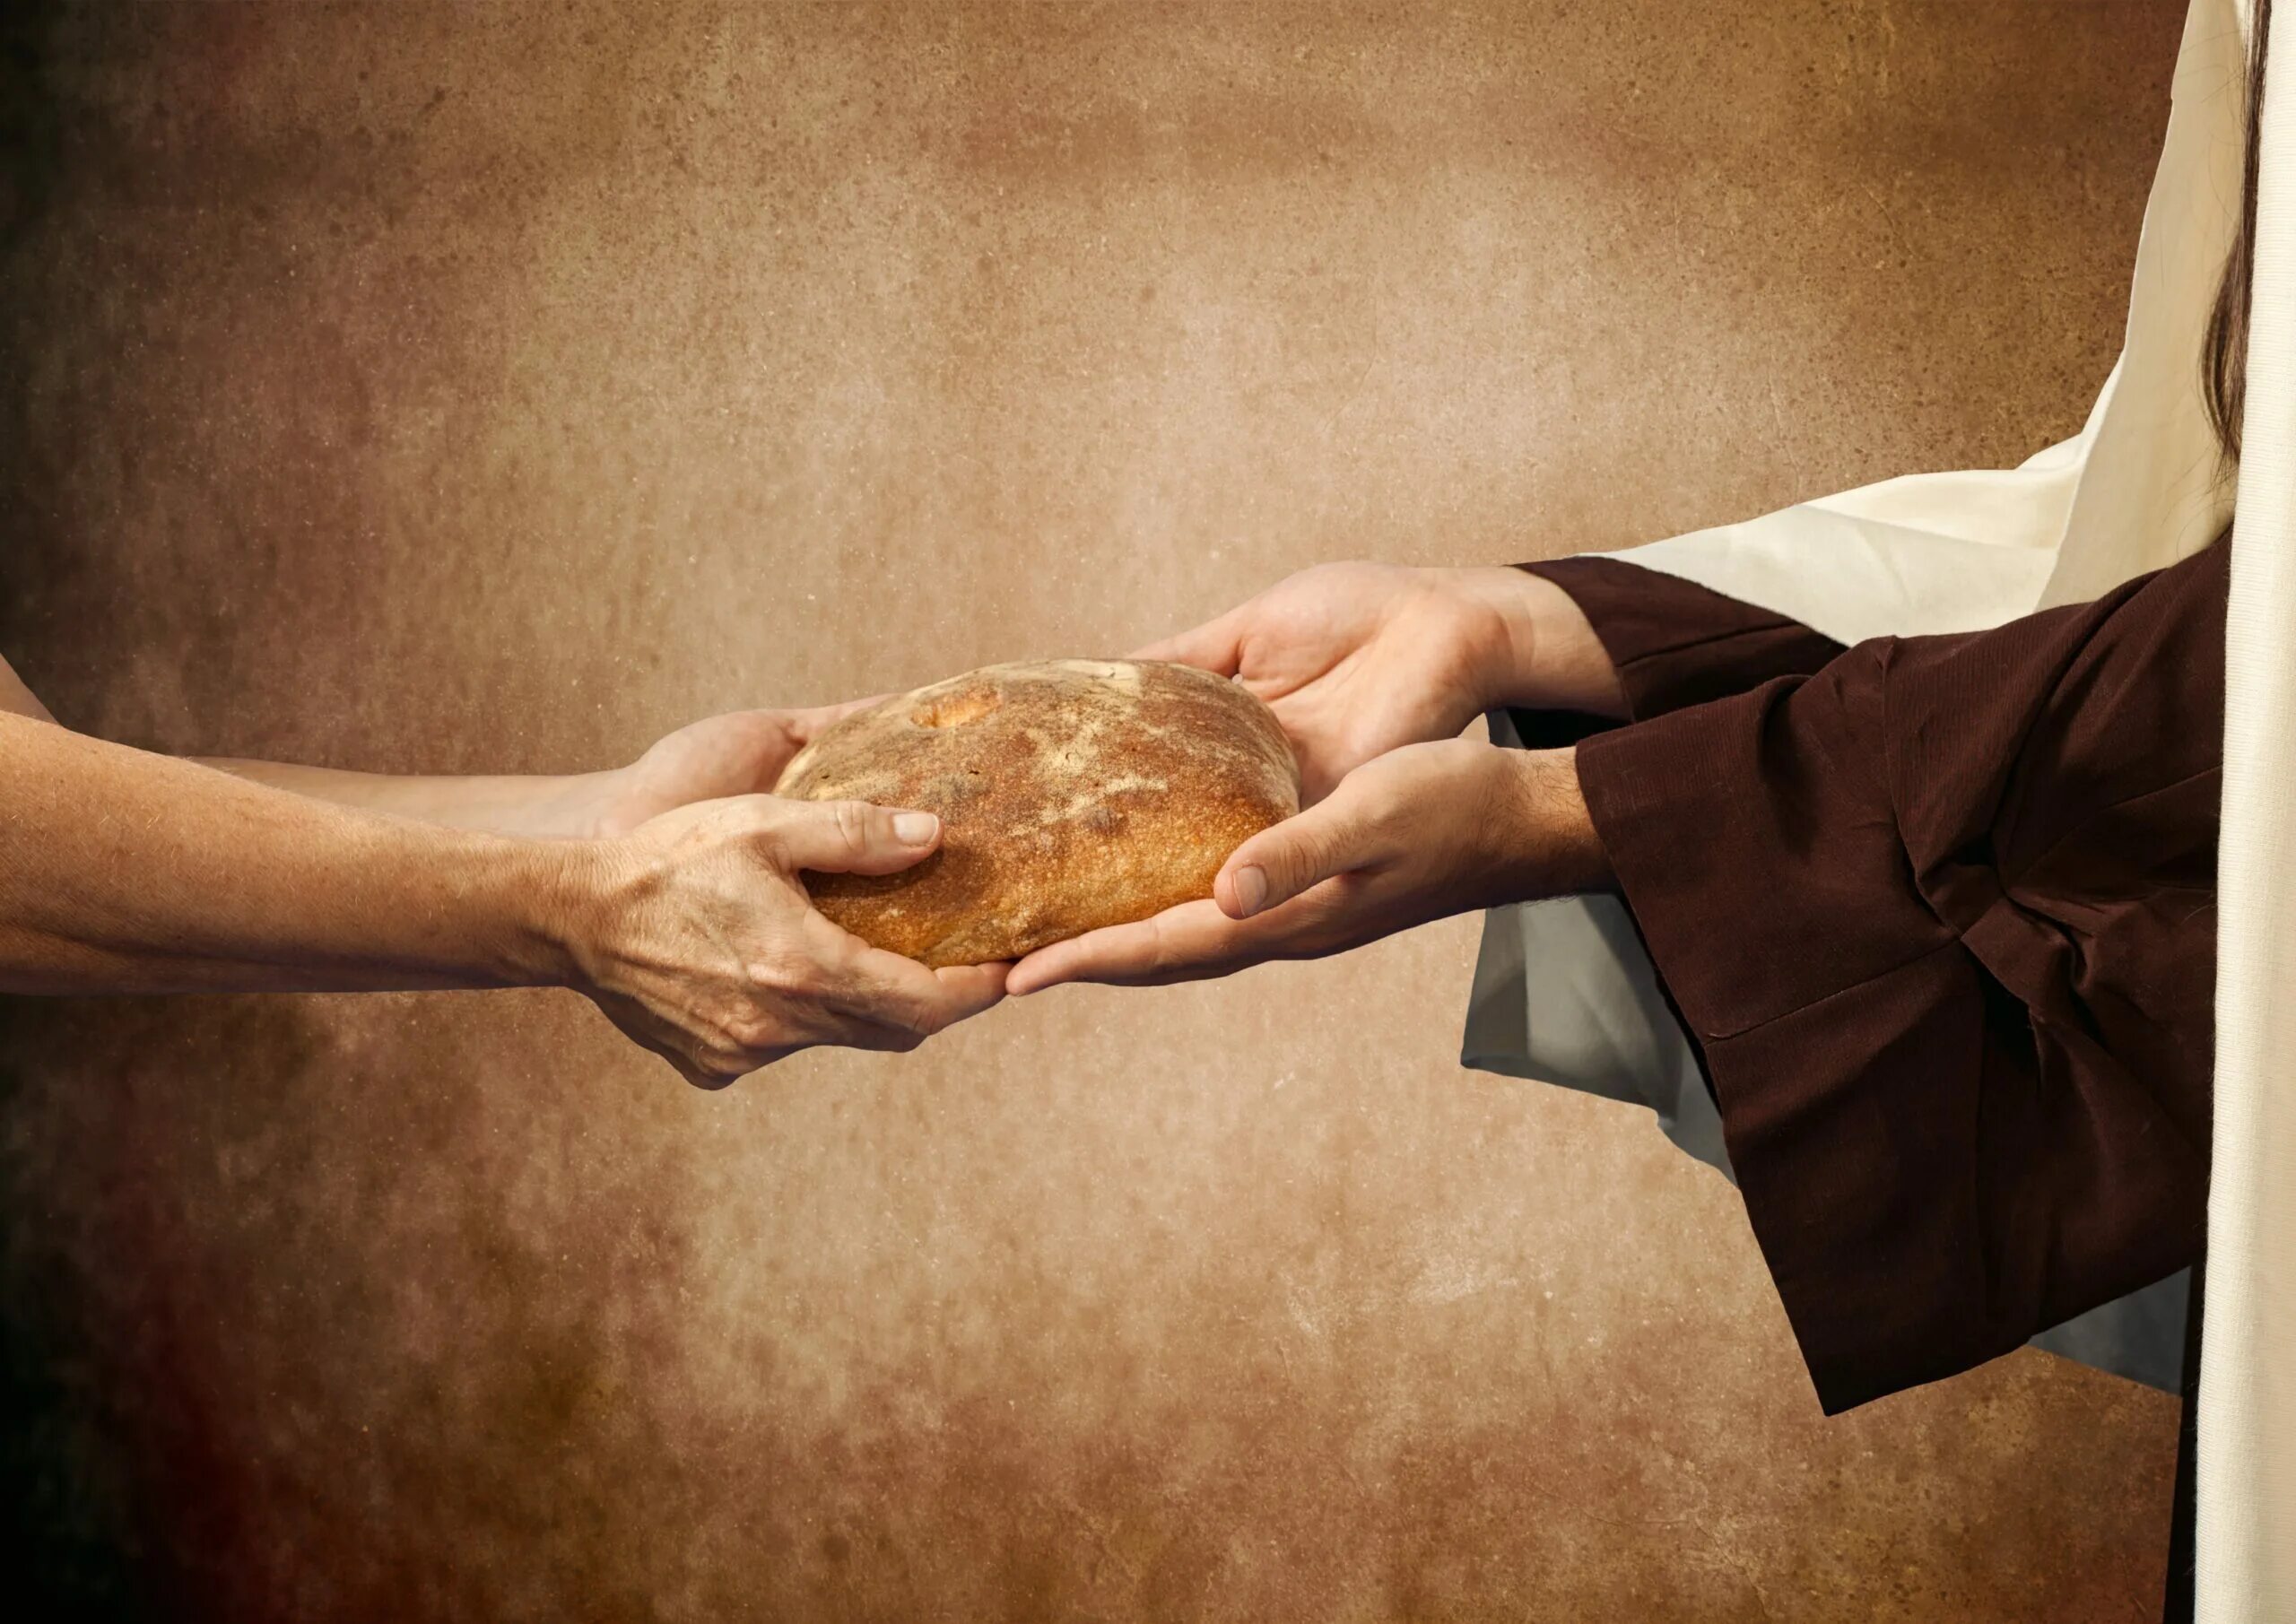 Накормить постящегося. Хлеб в руках. Руки хлебобулочные изделия. Христос и хлеб. Делиться хлебом.